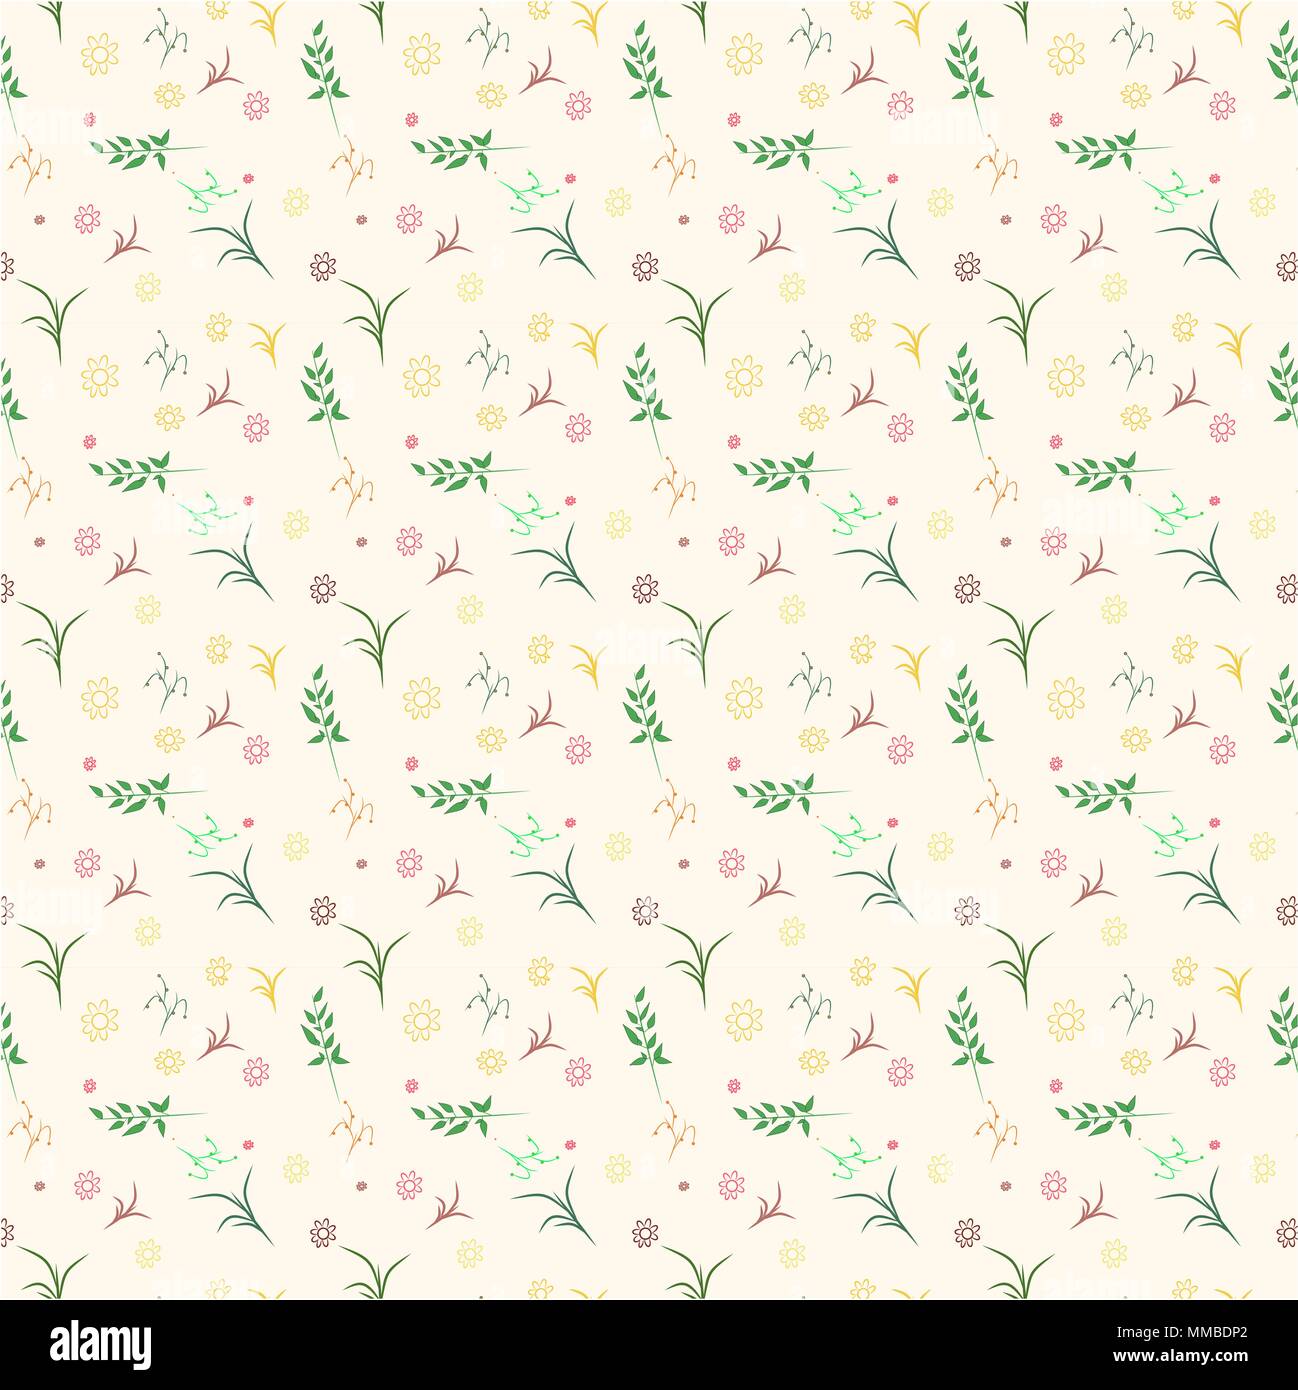 Vector patrón floral en el doodle con flores y hojas de estilo. Suave, fondo floral de primavera Ilustración del Vector